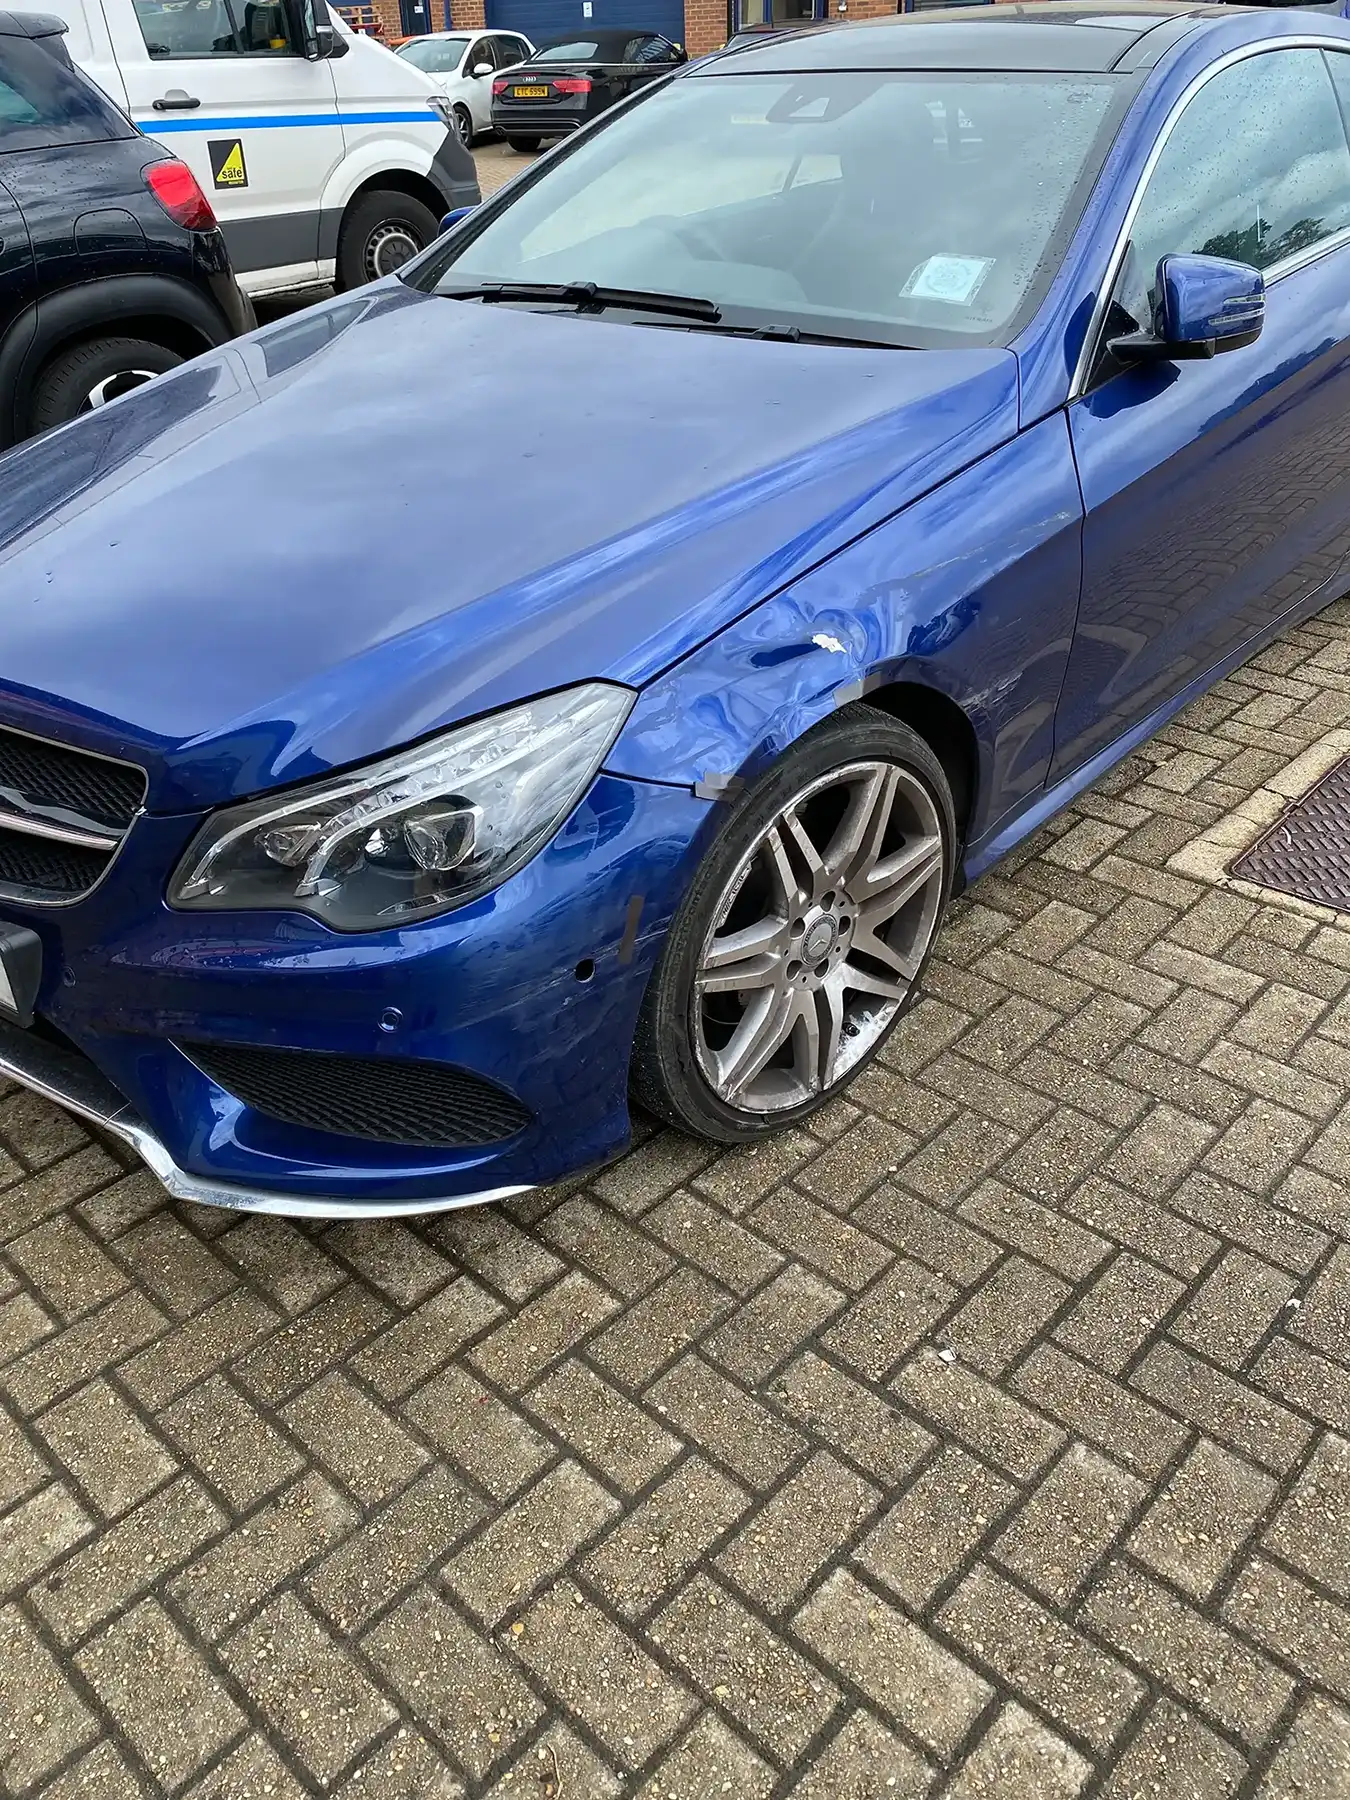 A blue Mercedes Benz